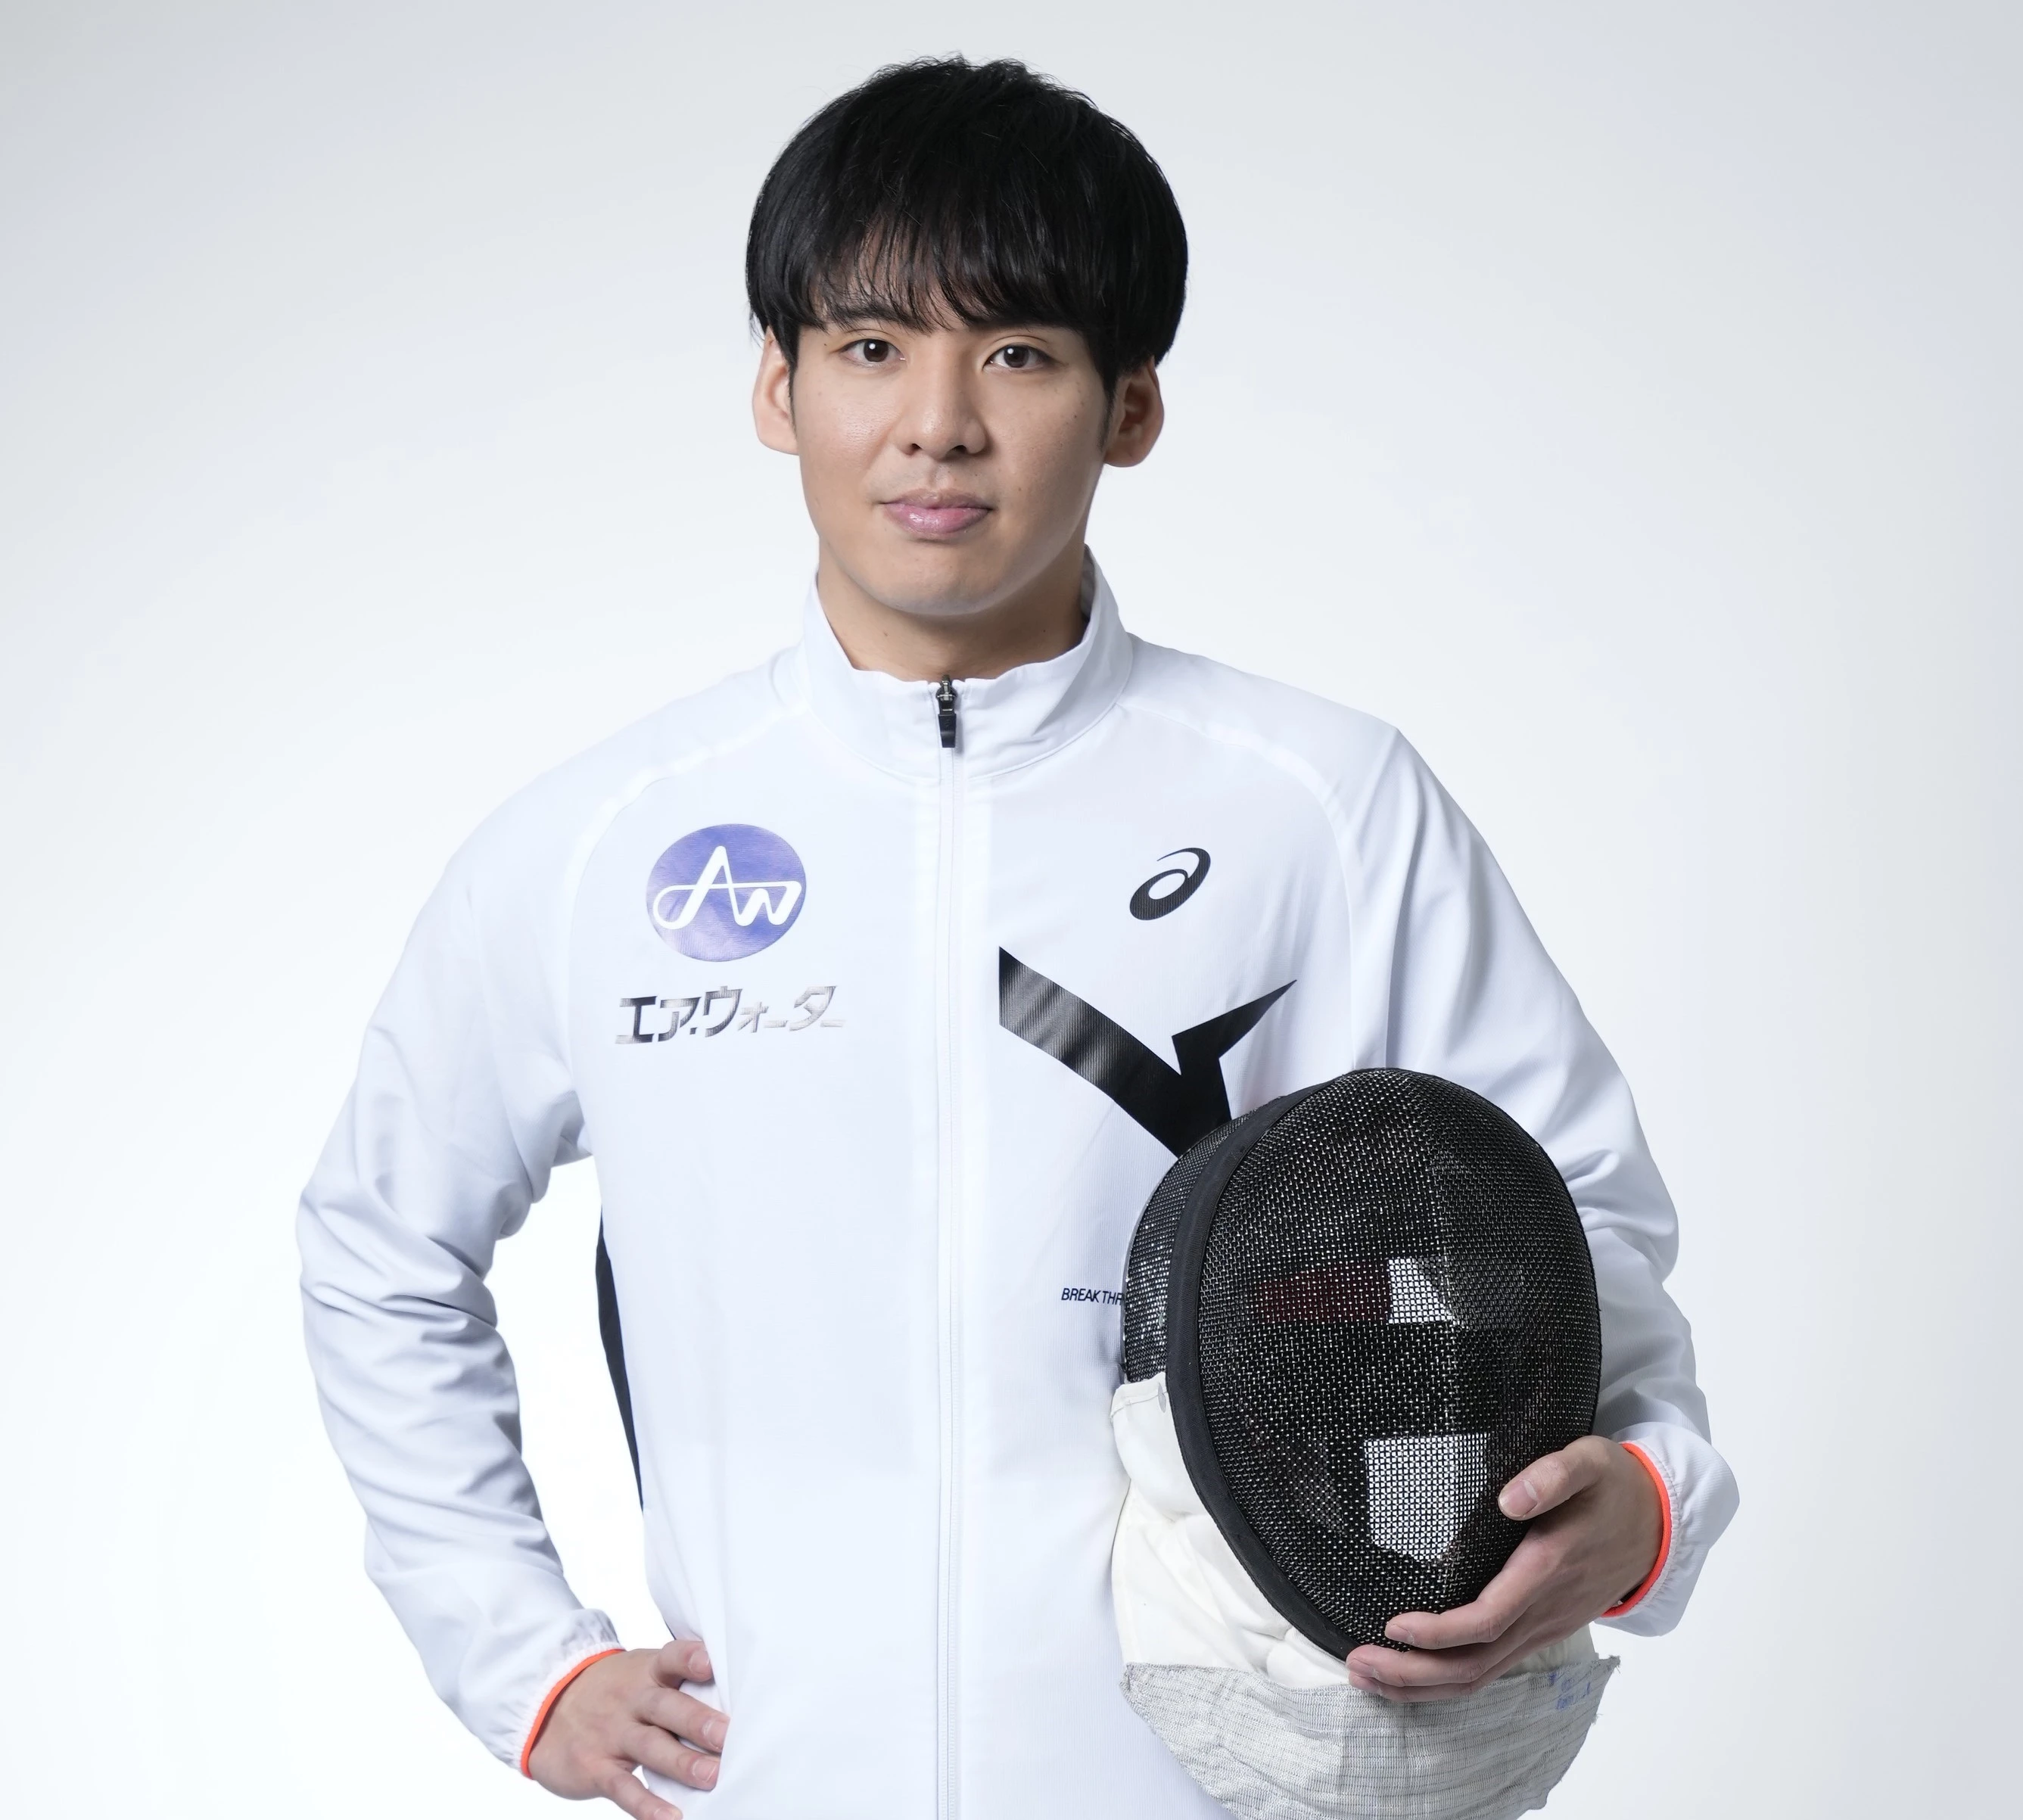 フェンシング男子フルーレ日本代表
上野 優斗　UENO YUTO